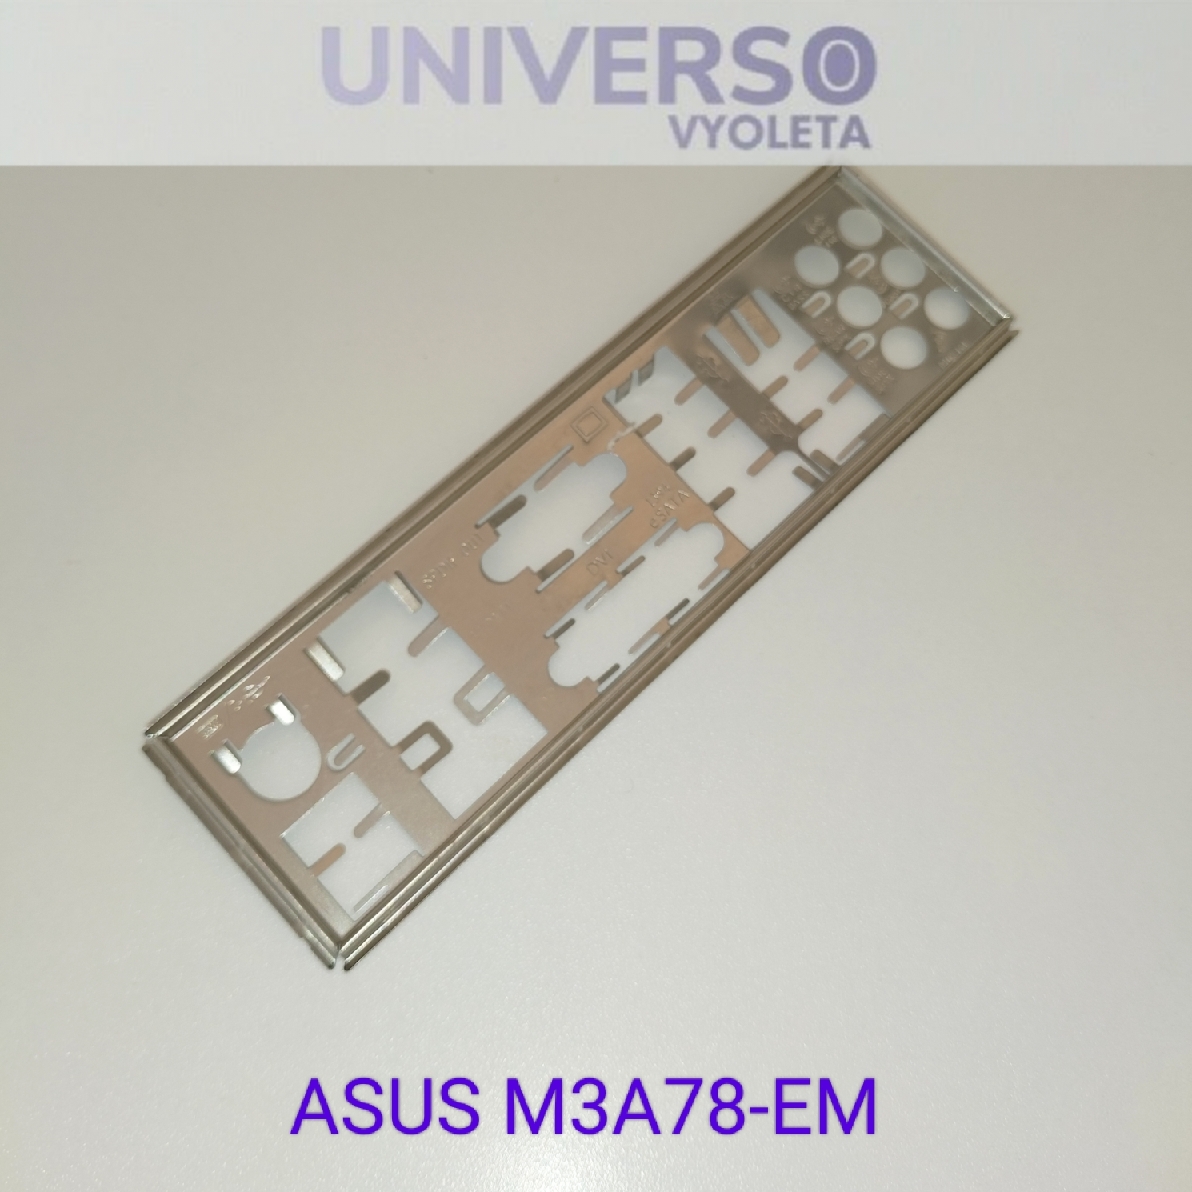 ASUS M3A78-EM